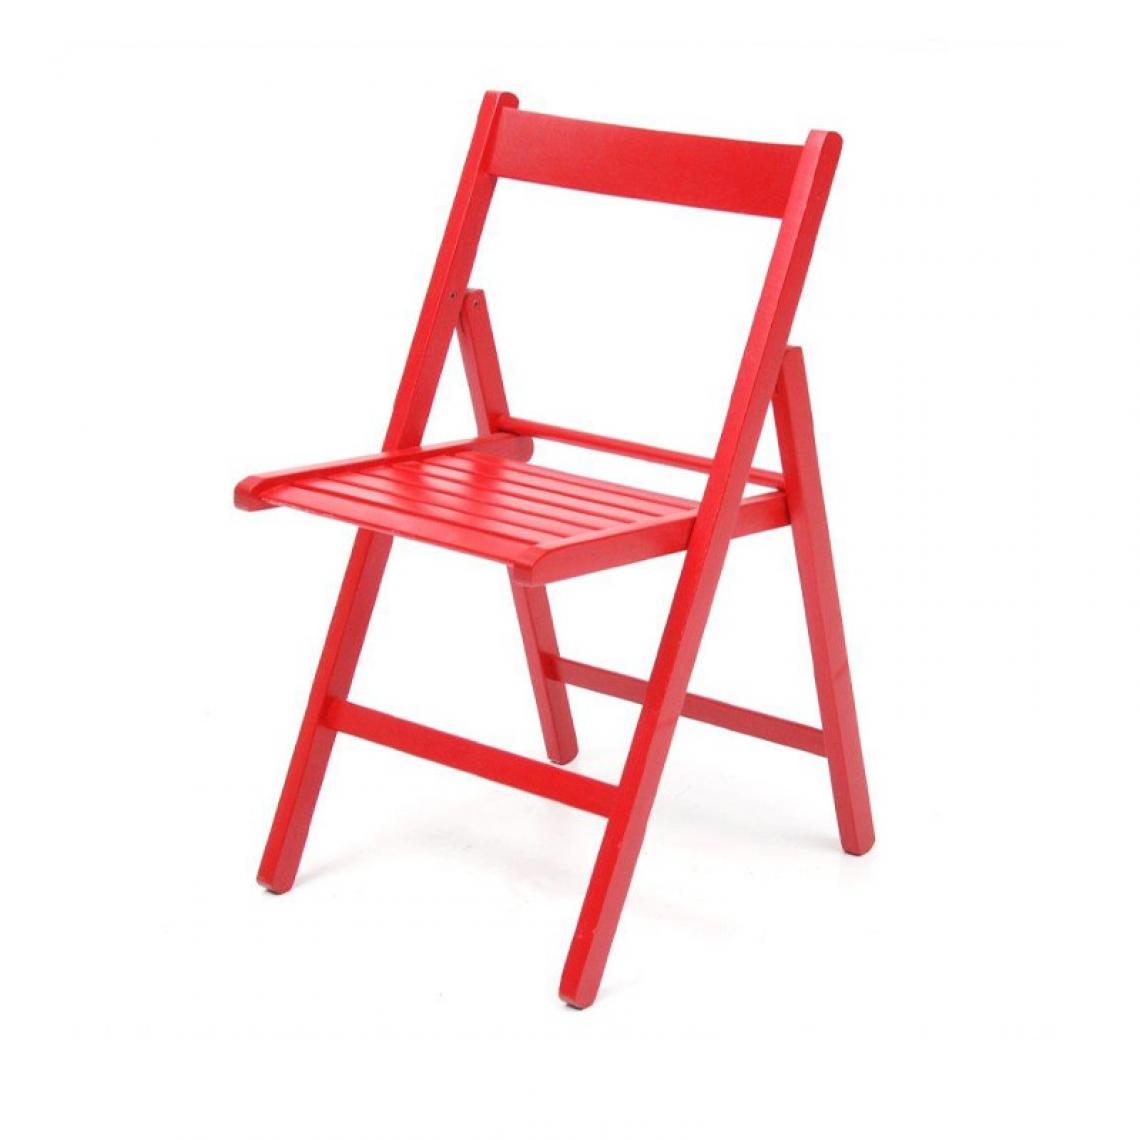 Webmarketpoint - Chaise pliante en hêtre de haute qualité couleur rouge 43x48xh.79 cm - Chaises